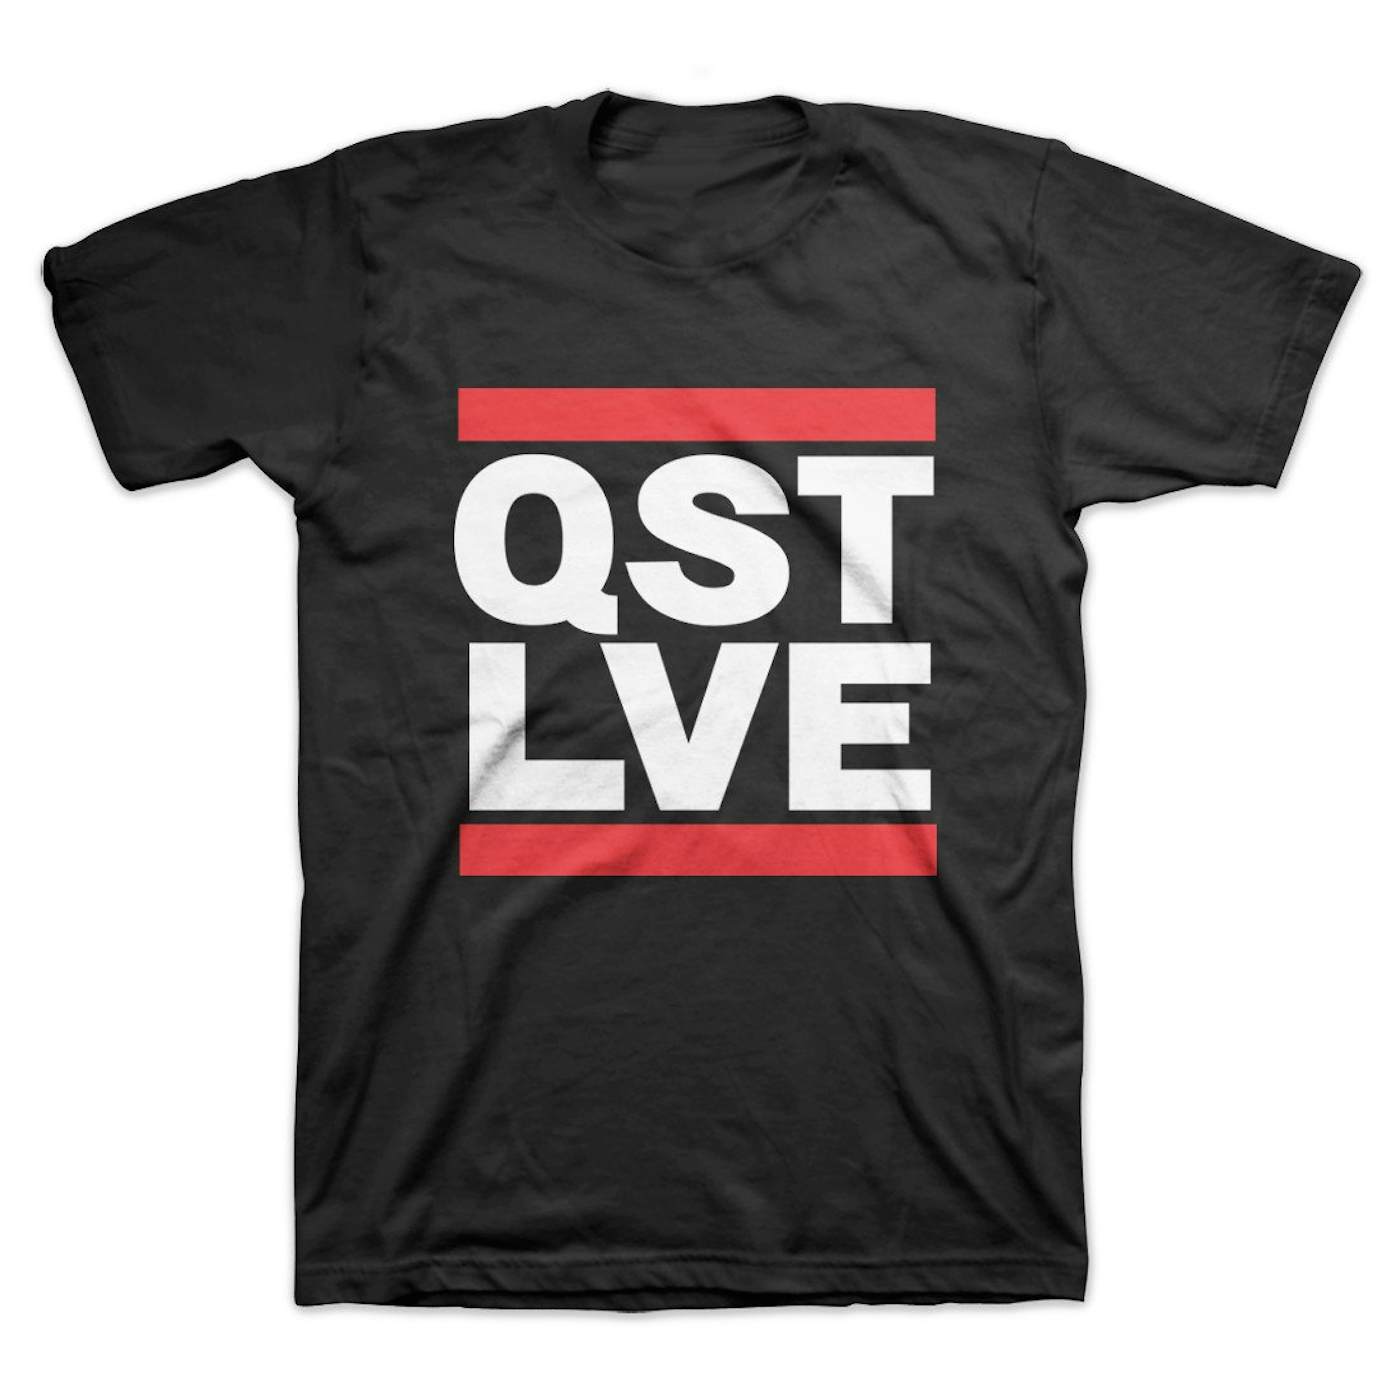 LVE uestlove QST T-Shirt